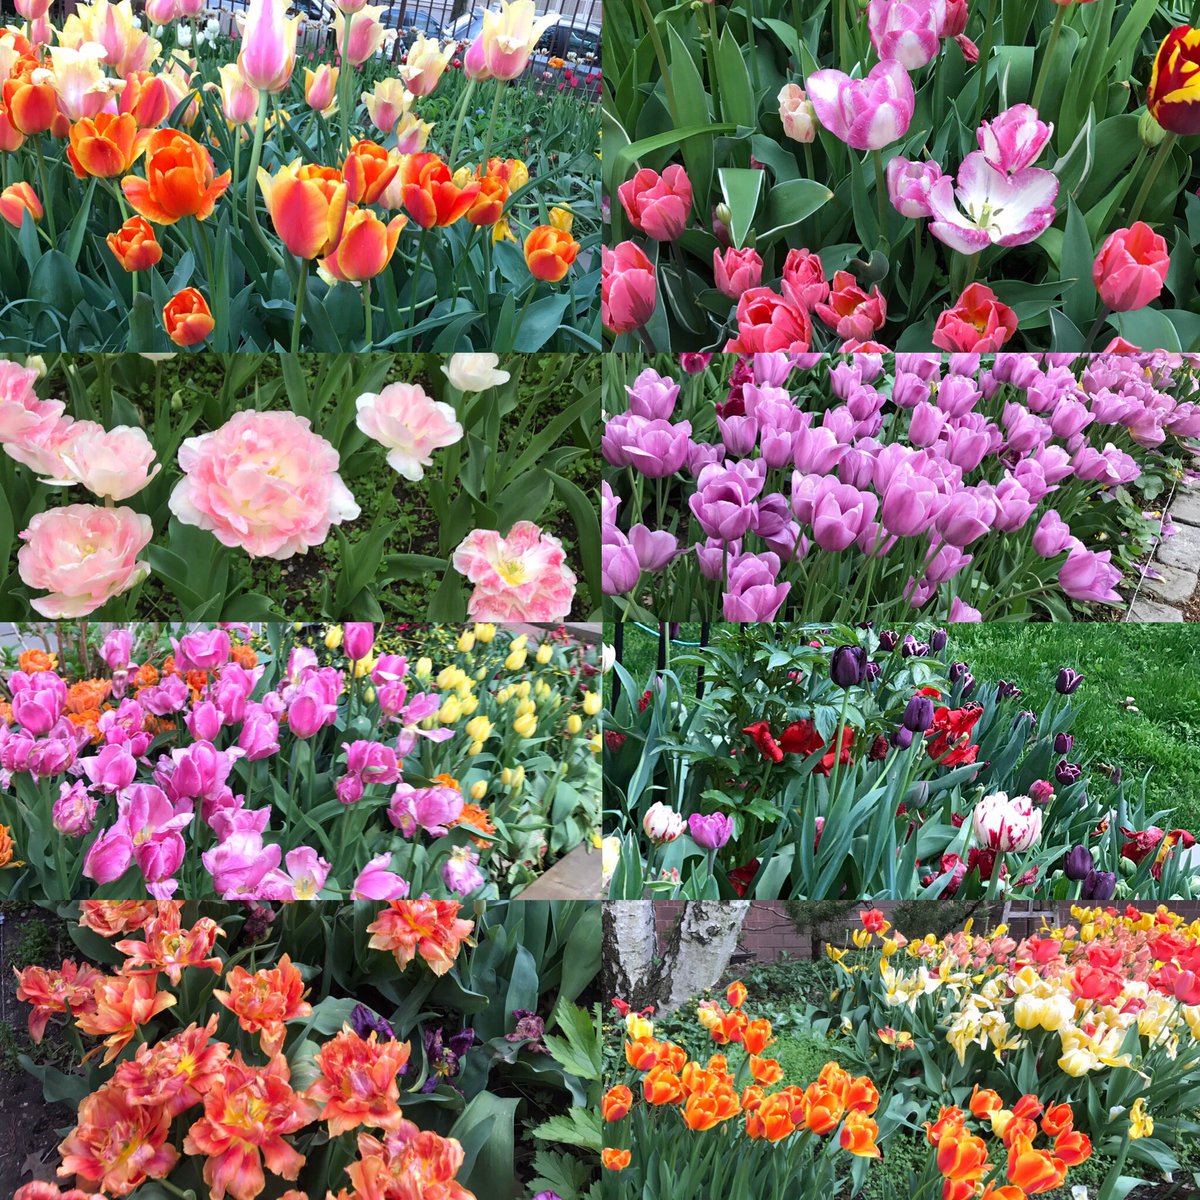 Enjoyed #tulips #tulipfestival @westsidecommunitygarden #westsidecommunitygarden #upperwestside 🌷🌷🌷